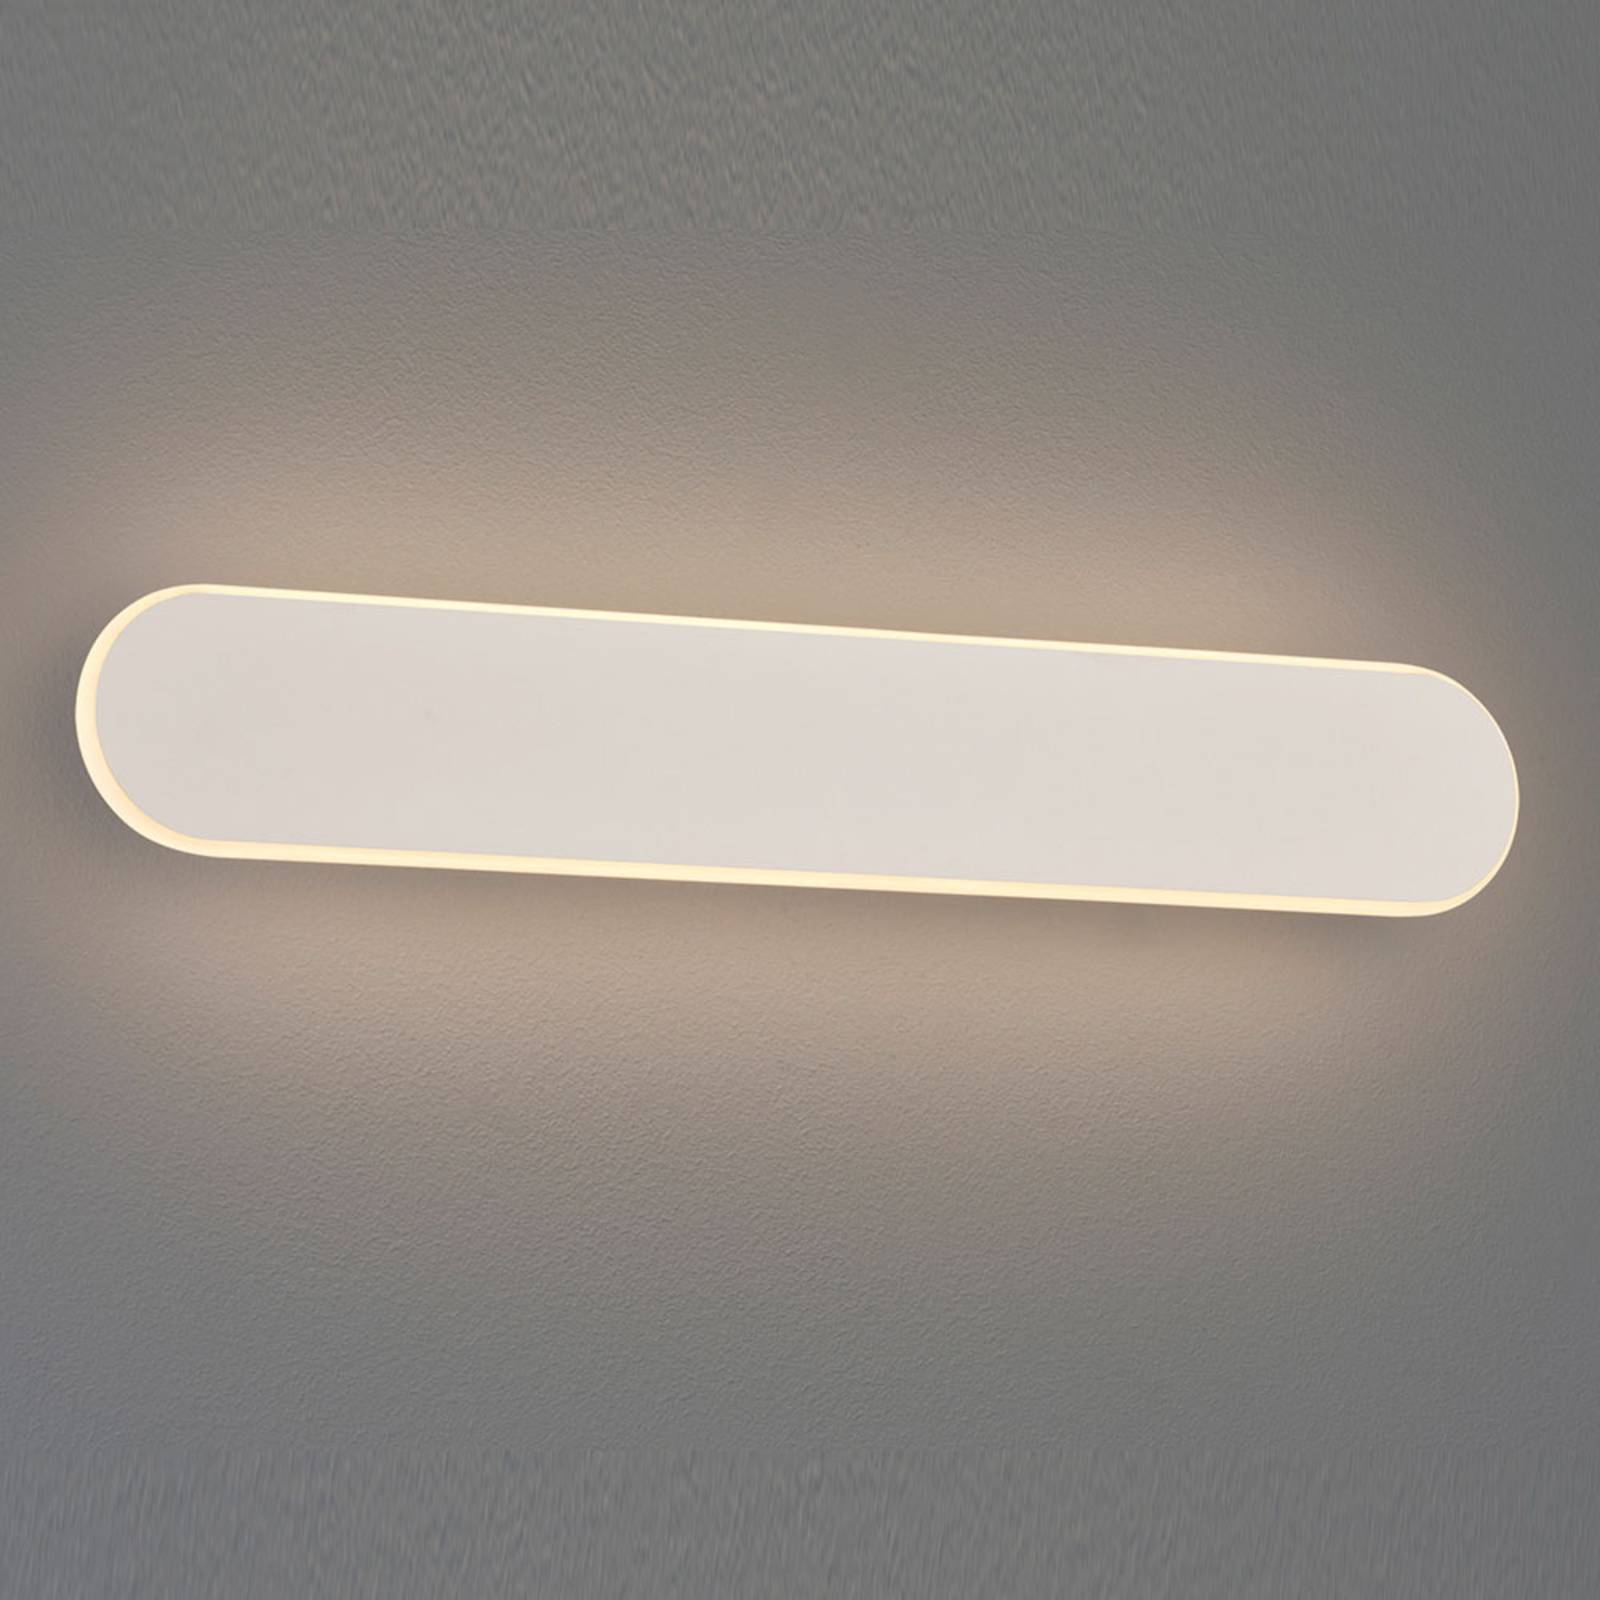 Trio lighting led fali lámpa carlo, switchdim, 50 cm, fehér